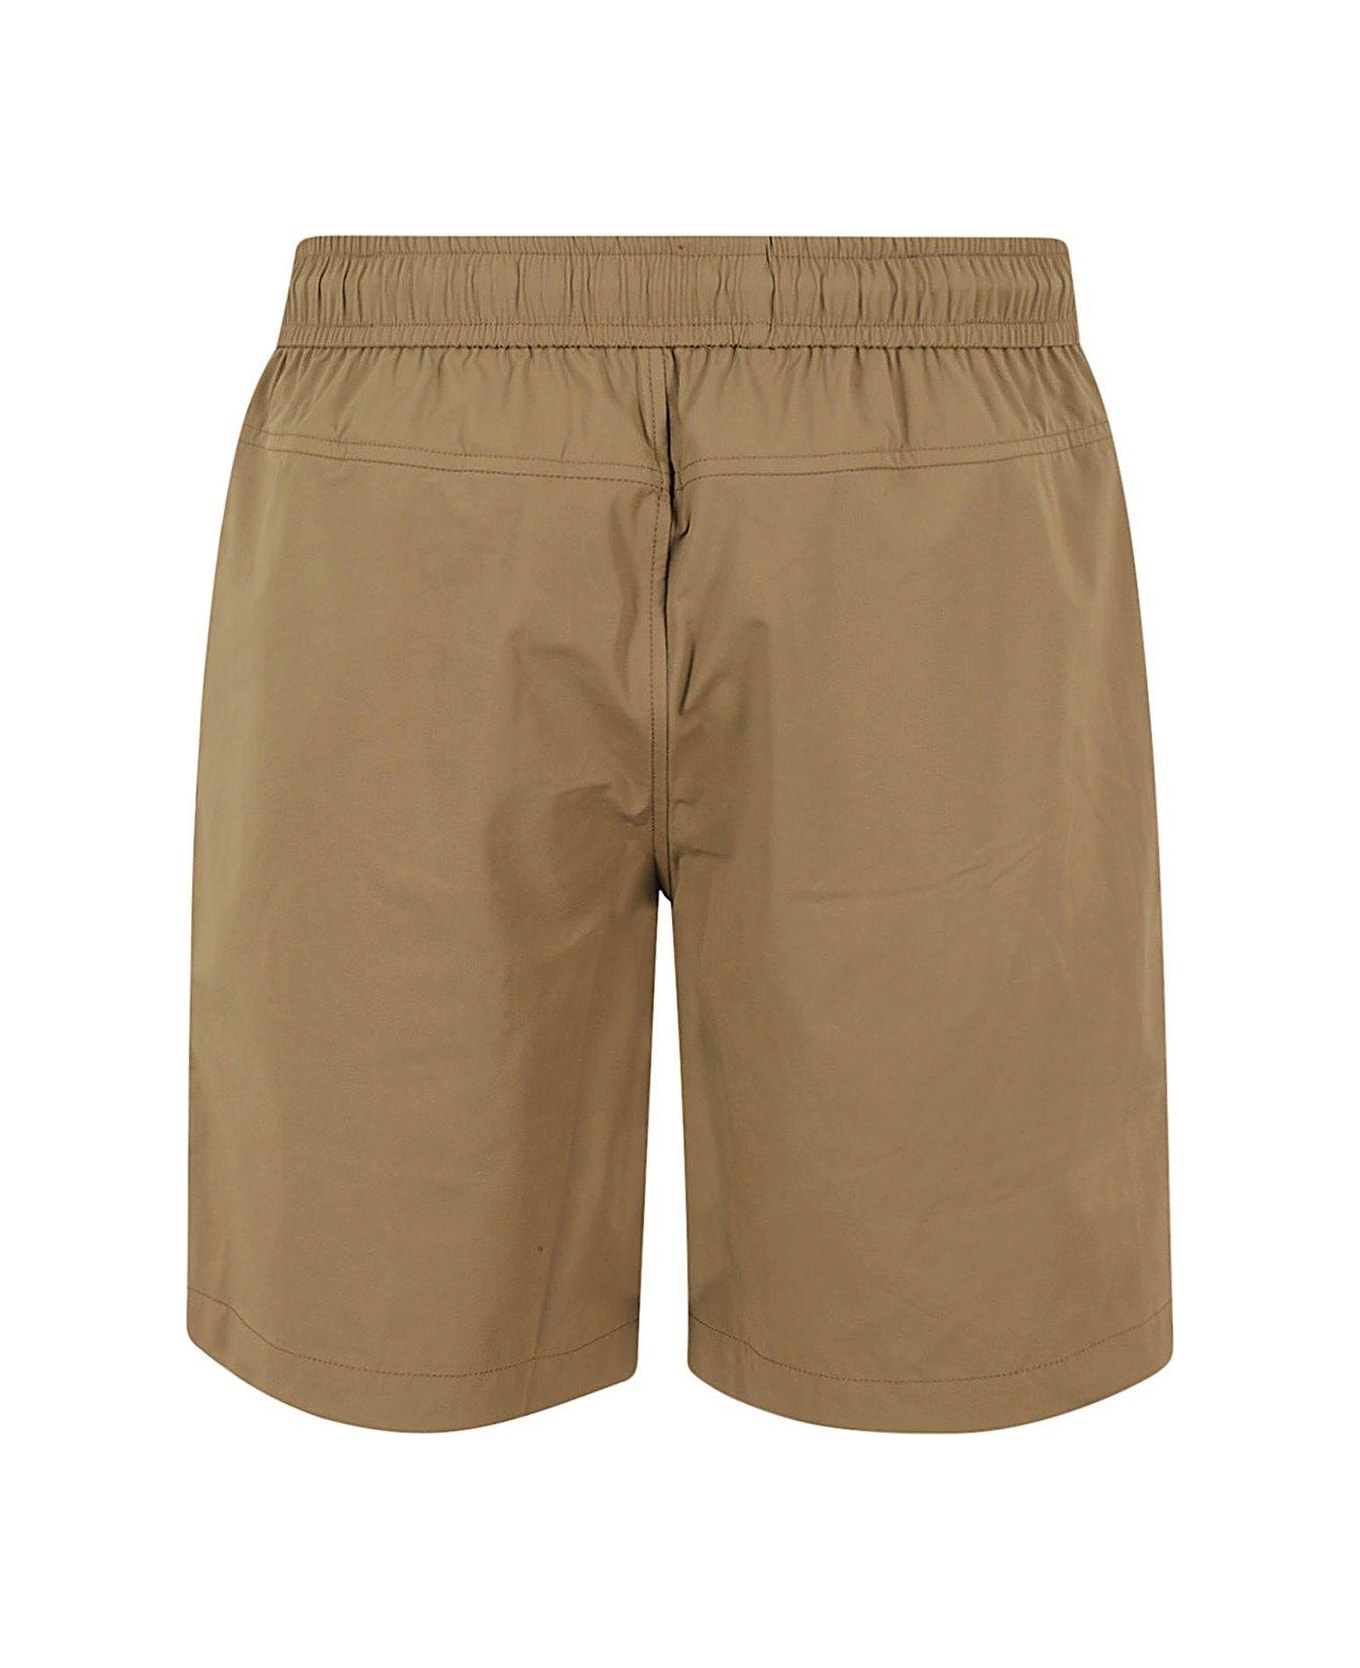 K-Way Elasticated Drawstring Waistband Shorts - Brown Corda